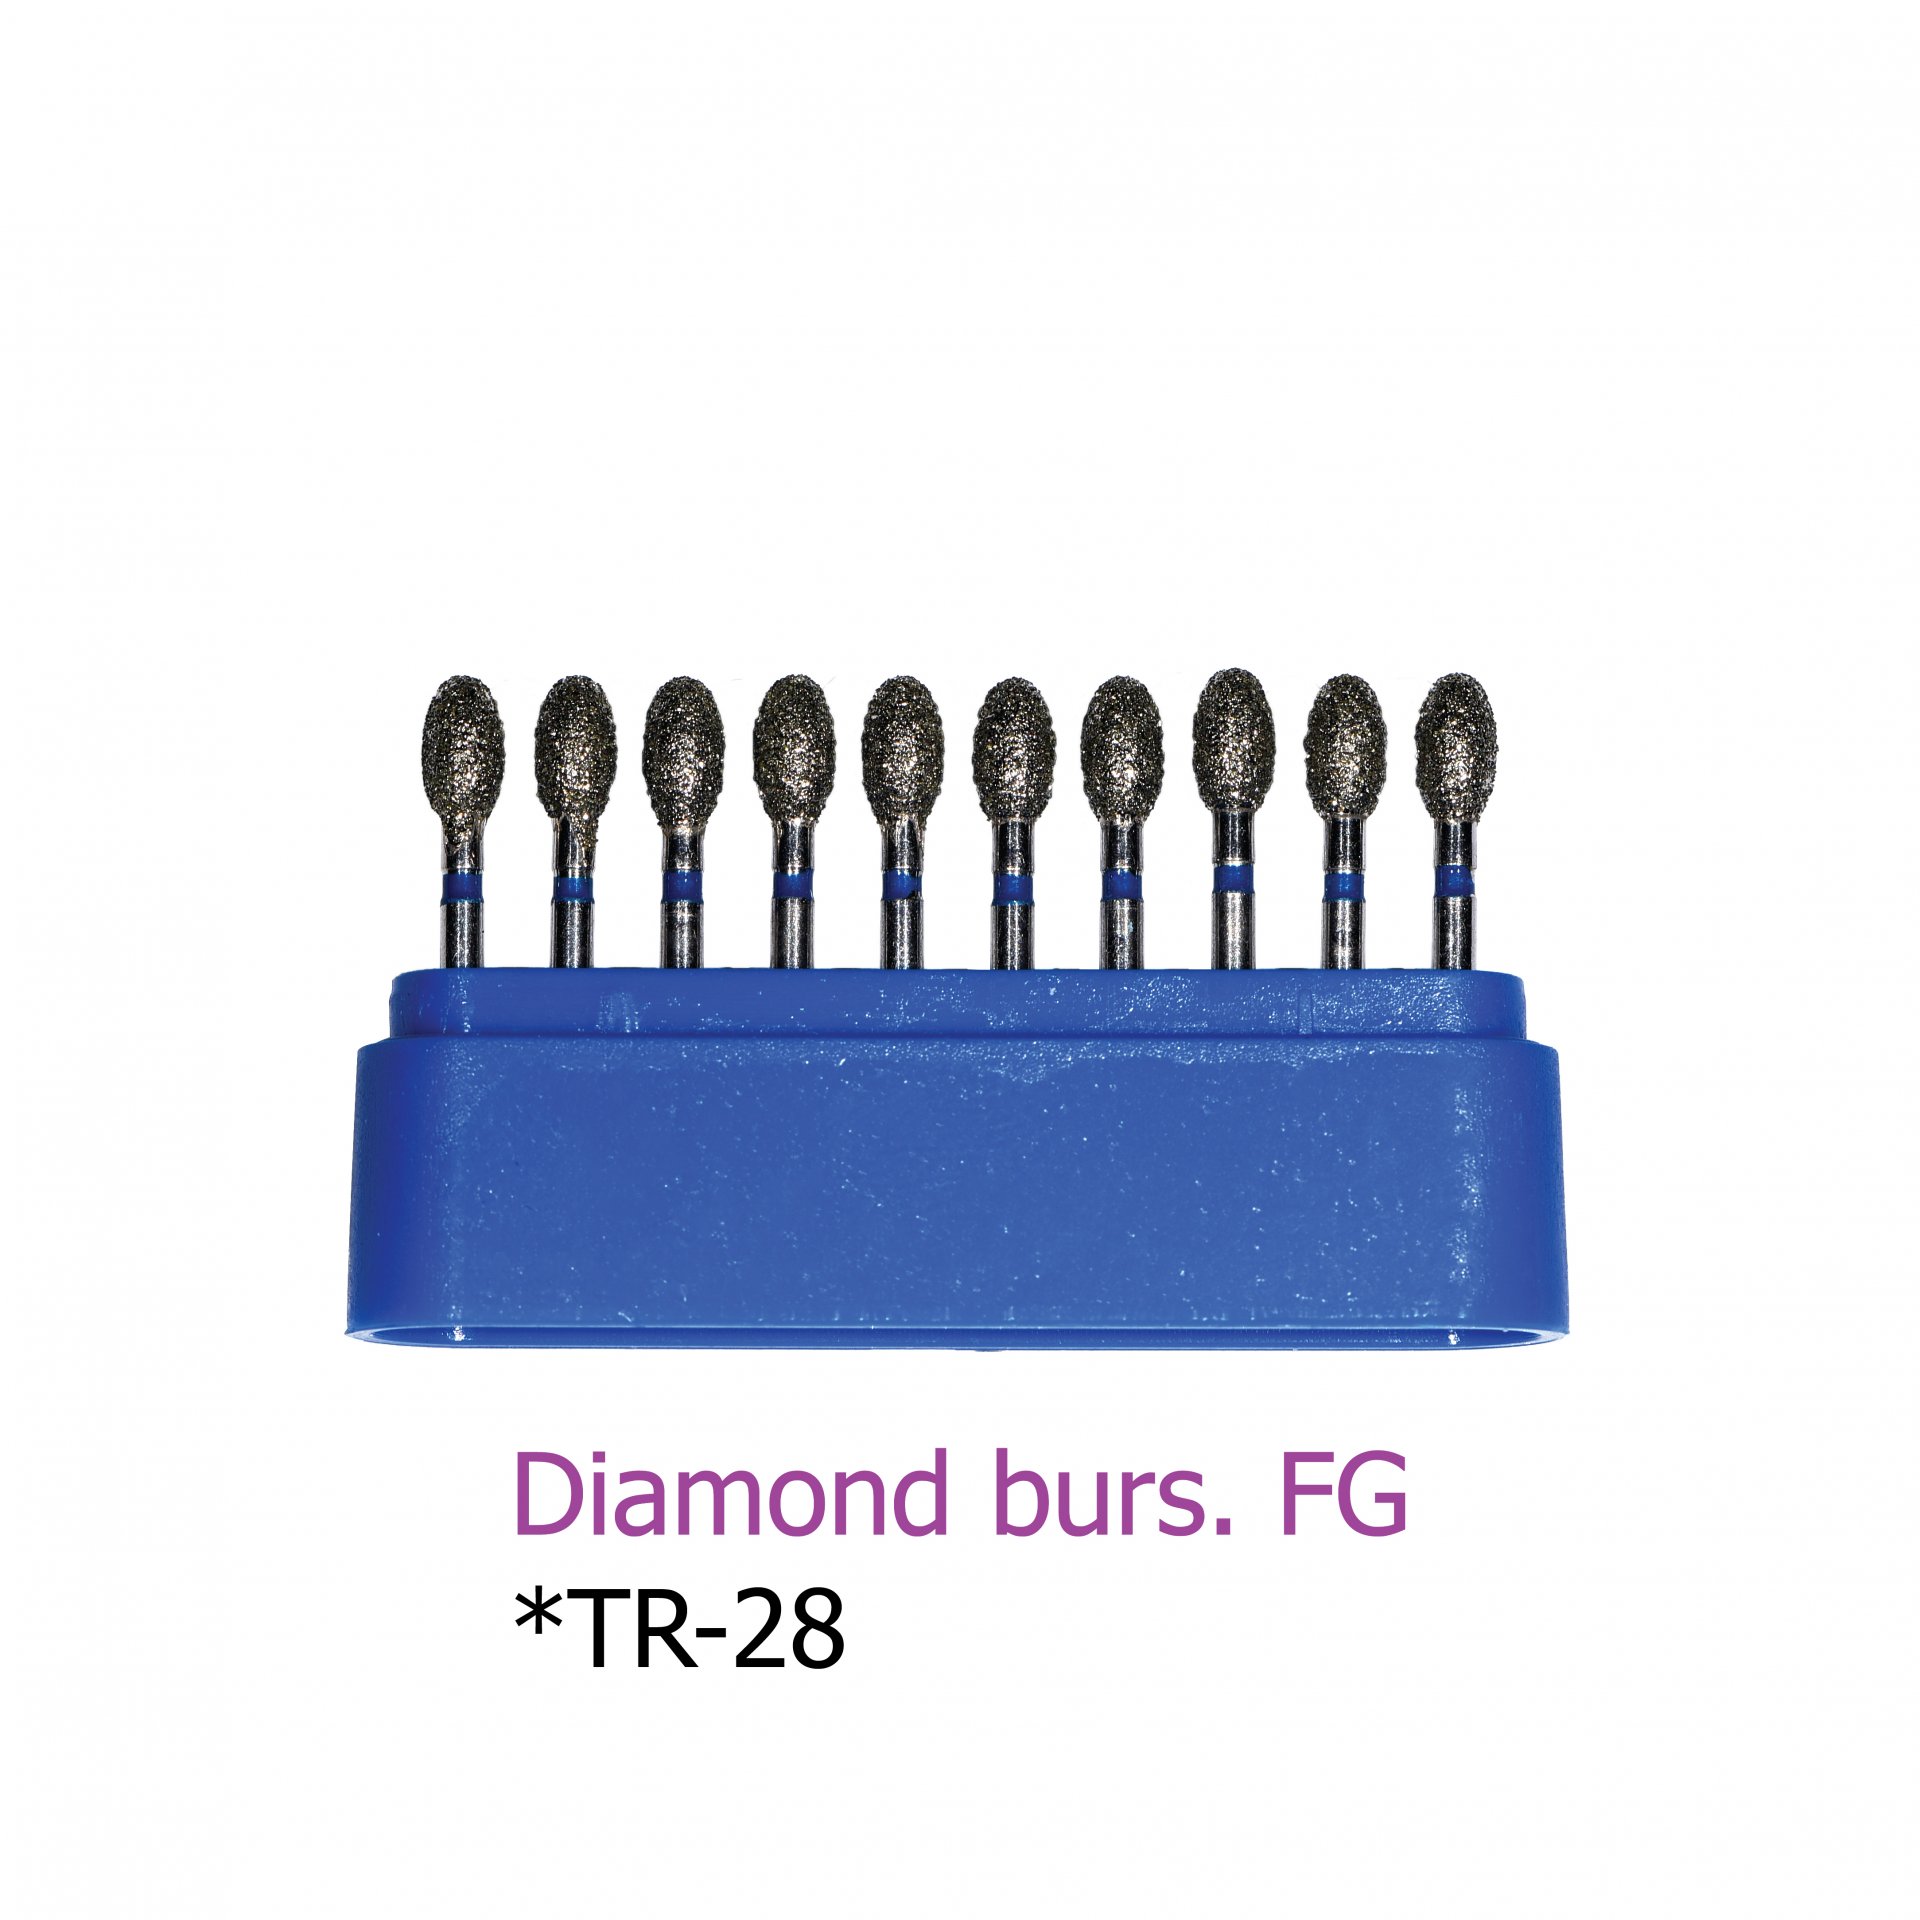 Diamond burs. FG *TR-28